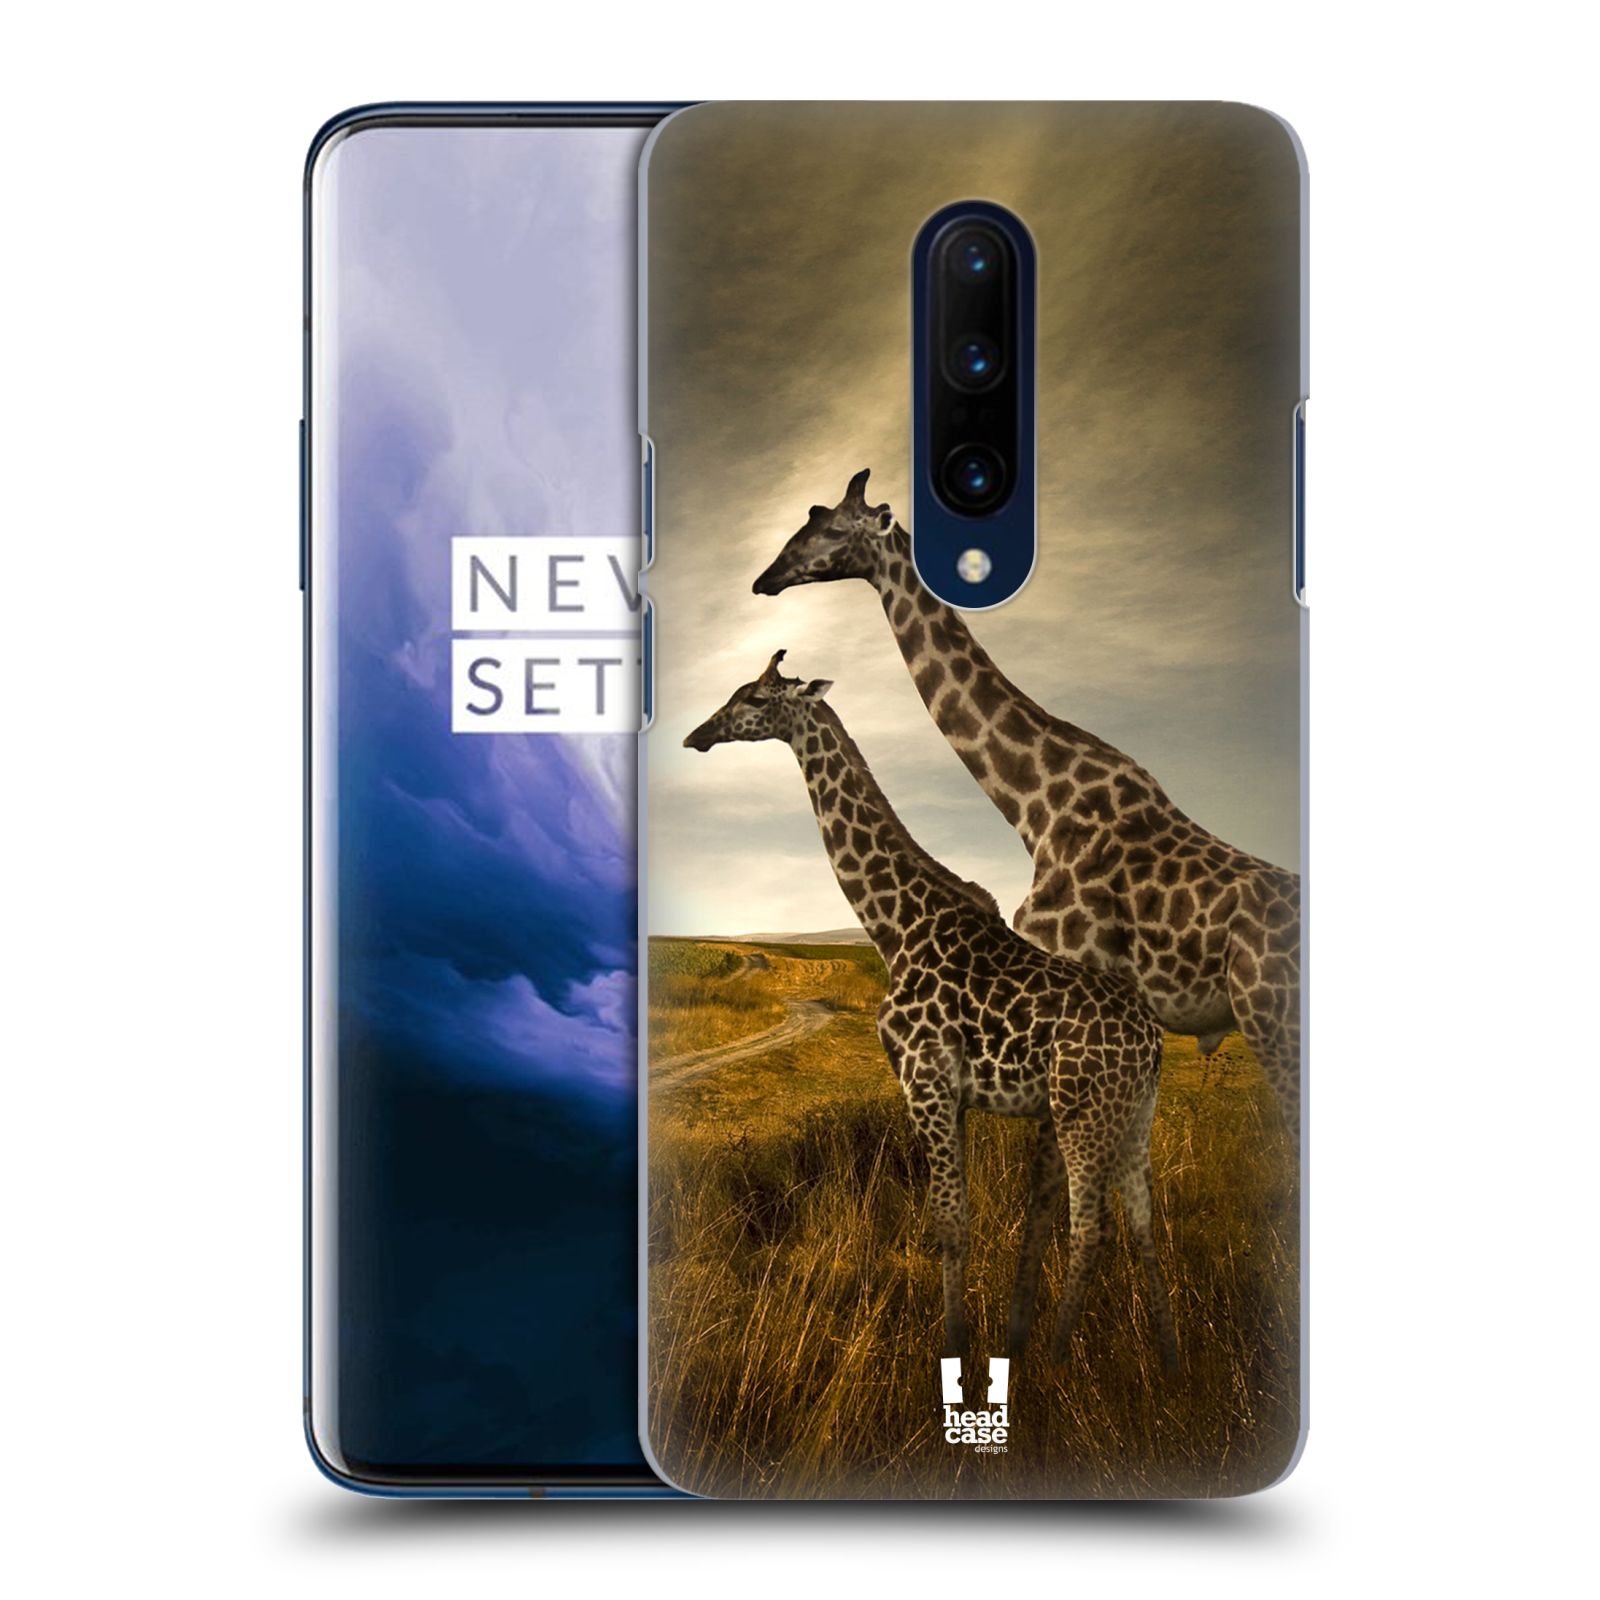 Zadní obal pro mobil OnePlus 7 PRO - HEAD CASE - Svět zvířat žirafy